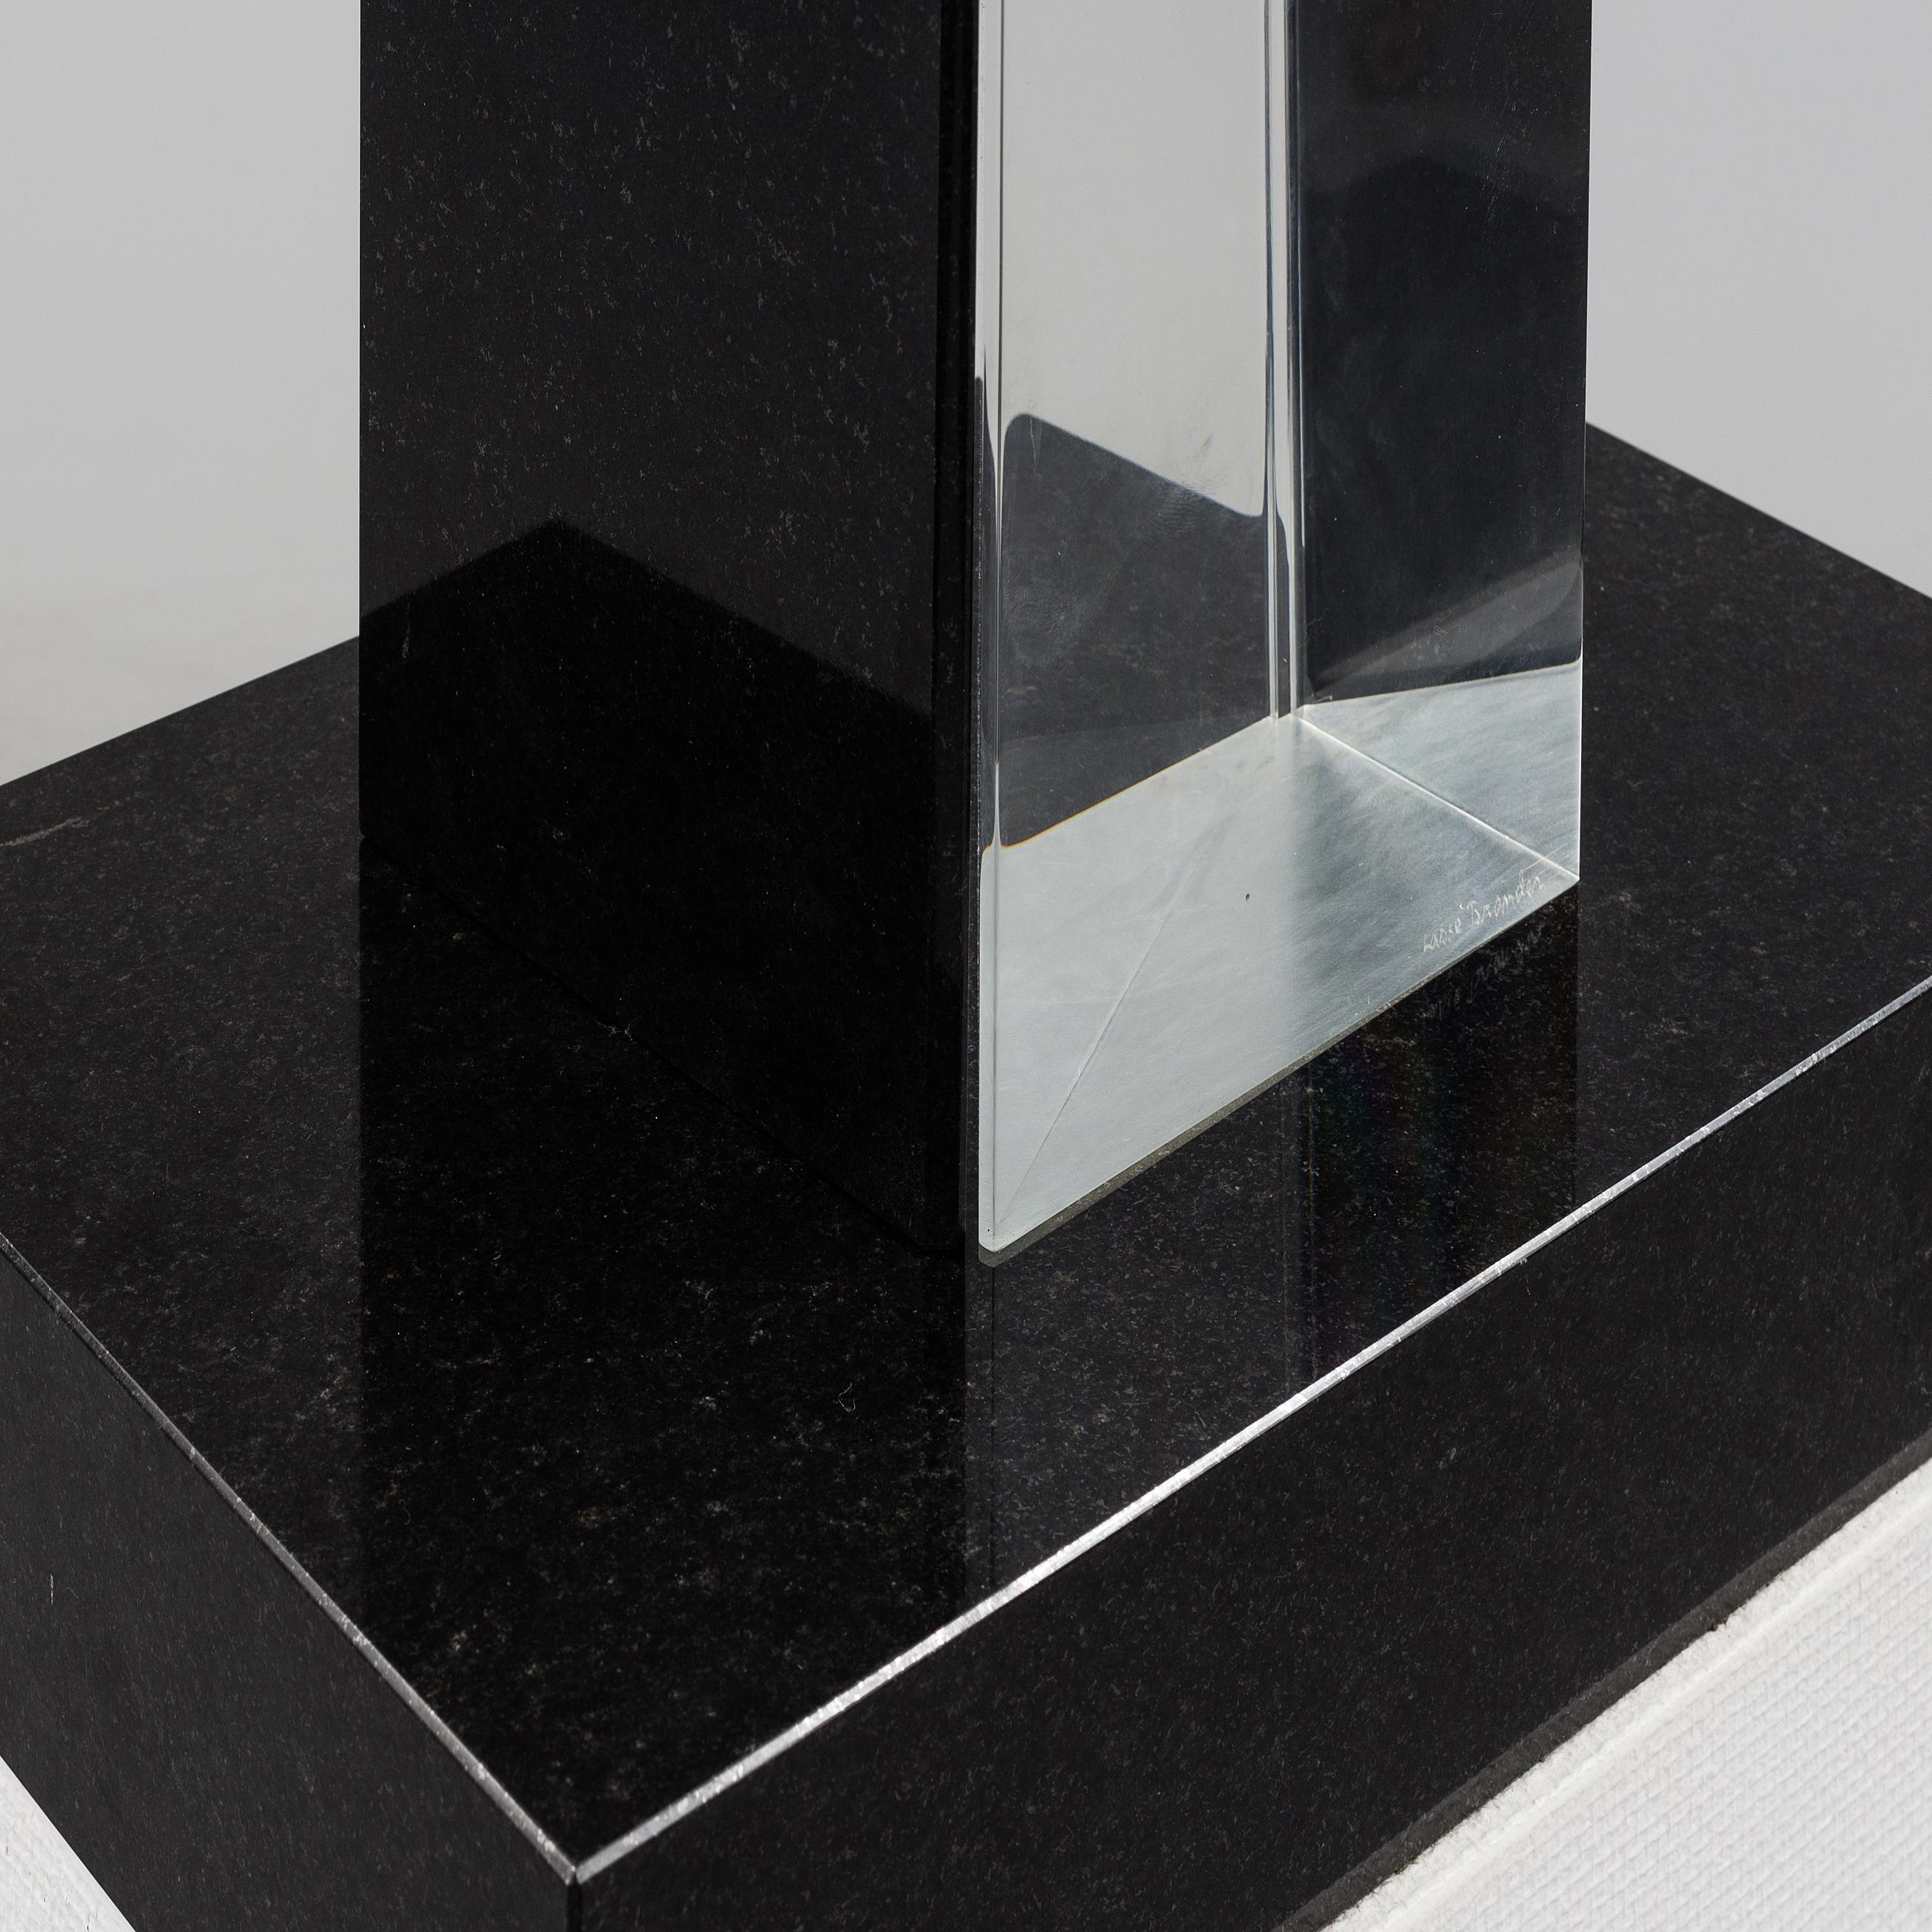 Pièce unique  Sculpture des années 1980 par  L'artiste suédois Lasse Brander (1930-2 008)

Un verre et une pierre impressionnants  sculpture sur piédestal Hauteur totale 172 cm ( 67,7 inches) composée de 2 